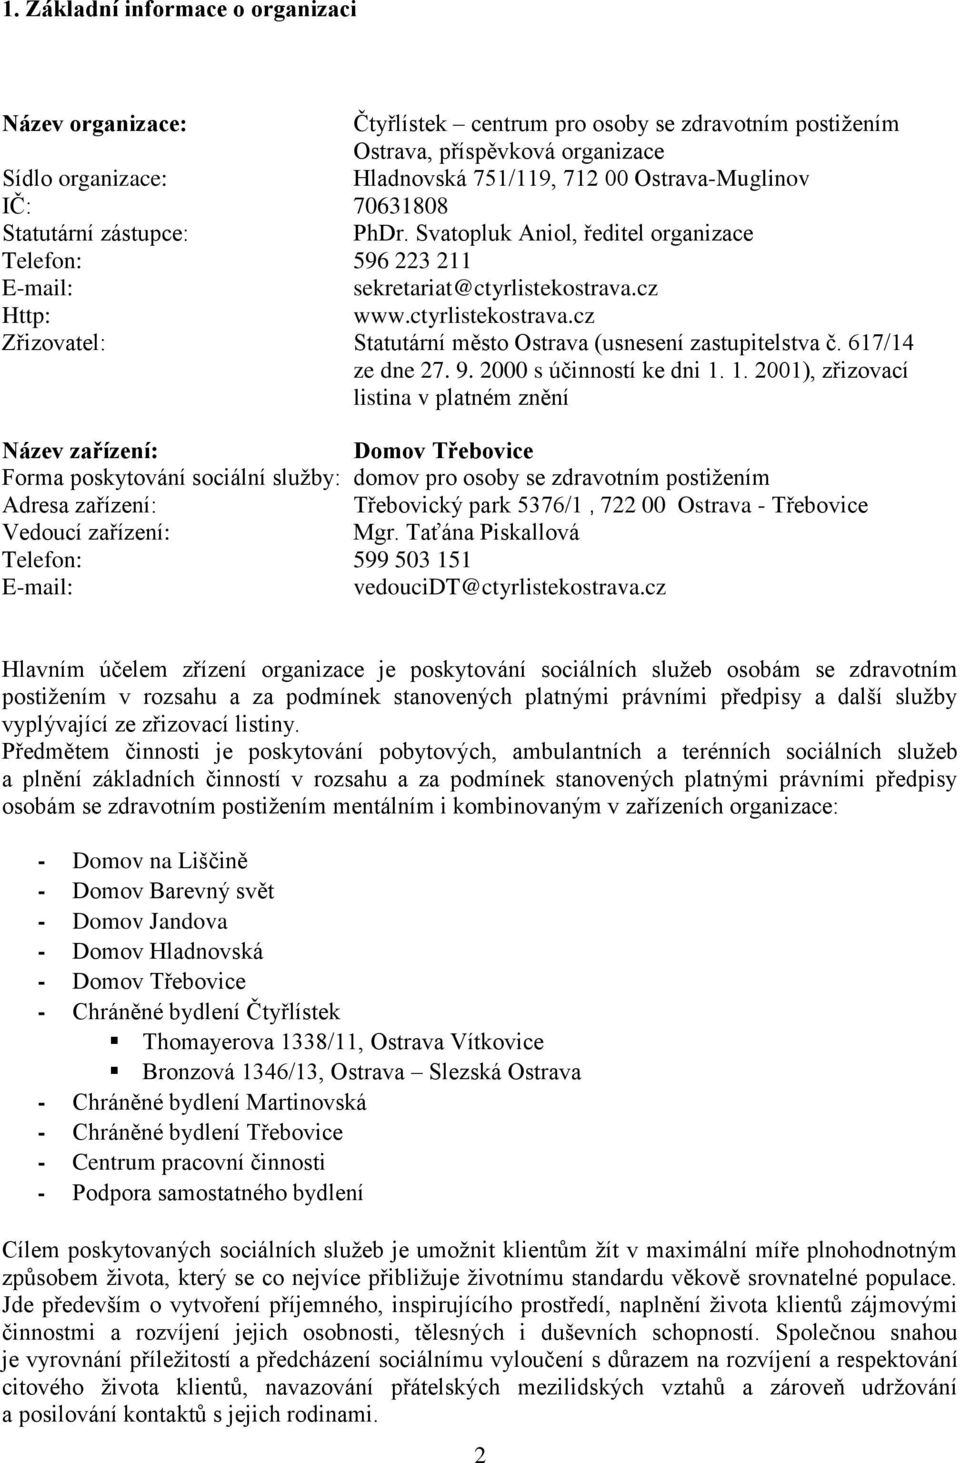 cz Http: www.ctyrlistekostrava.cz Zřizovatel: Statutární město Ostrava (usnesení zastupitelstva č. 617/14 ze dne 27. 9. 2000 s účinností ke dni 1.